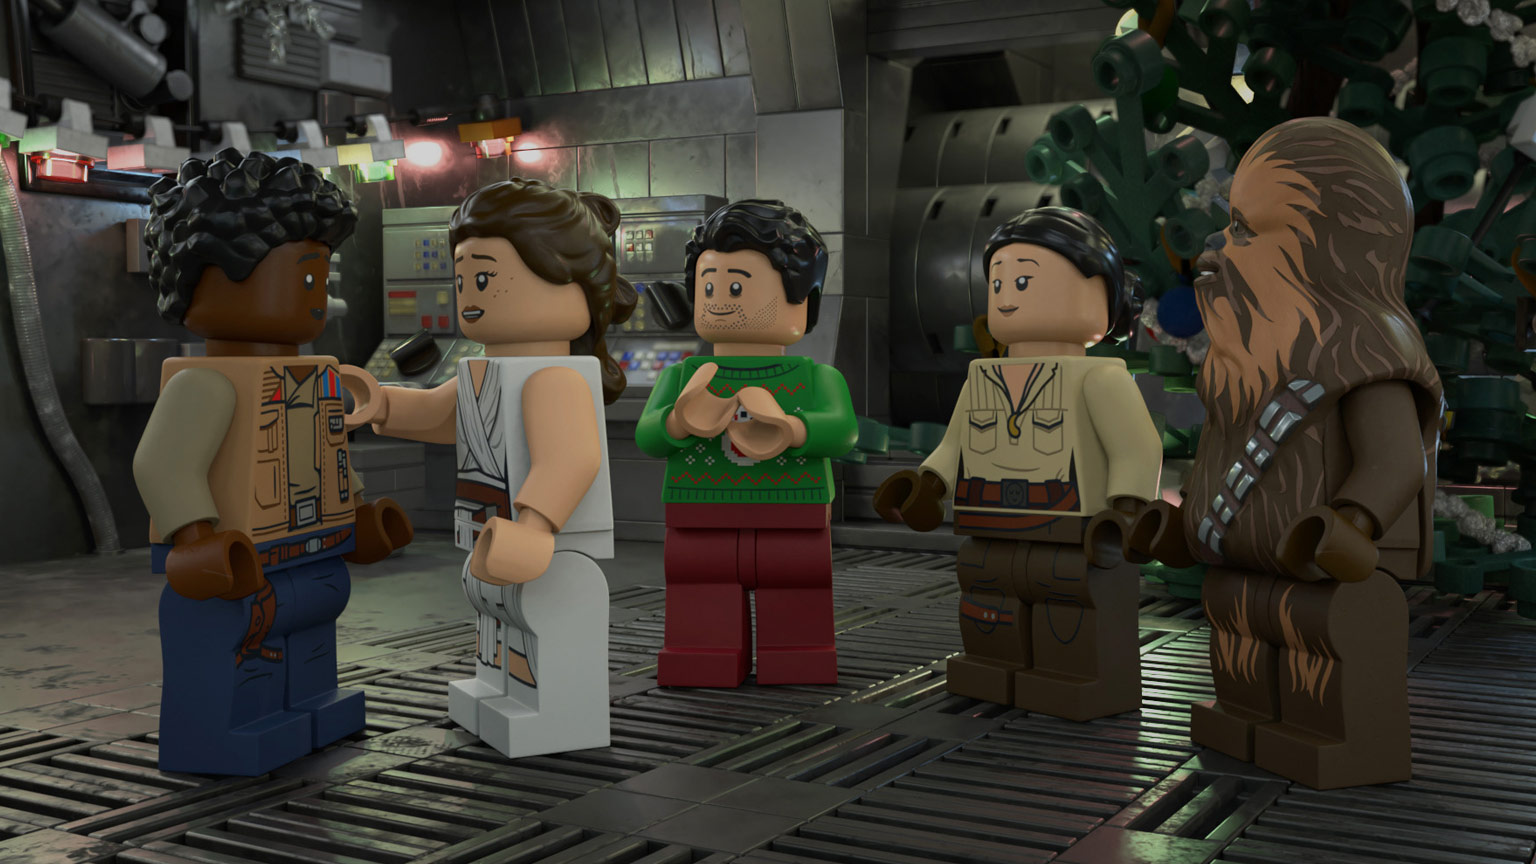 Lego Star Wars Holiday 2020